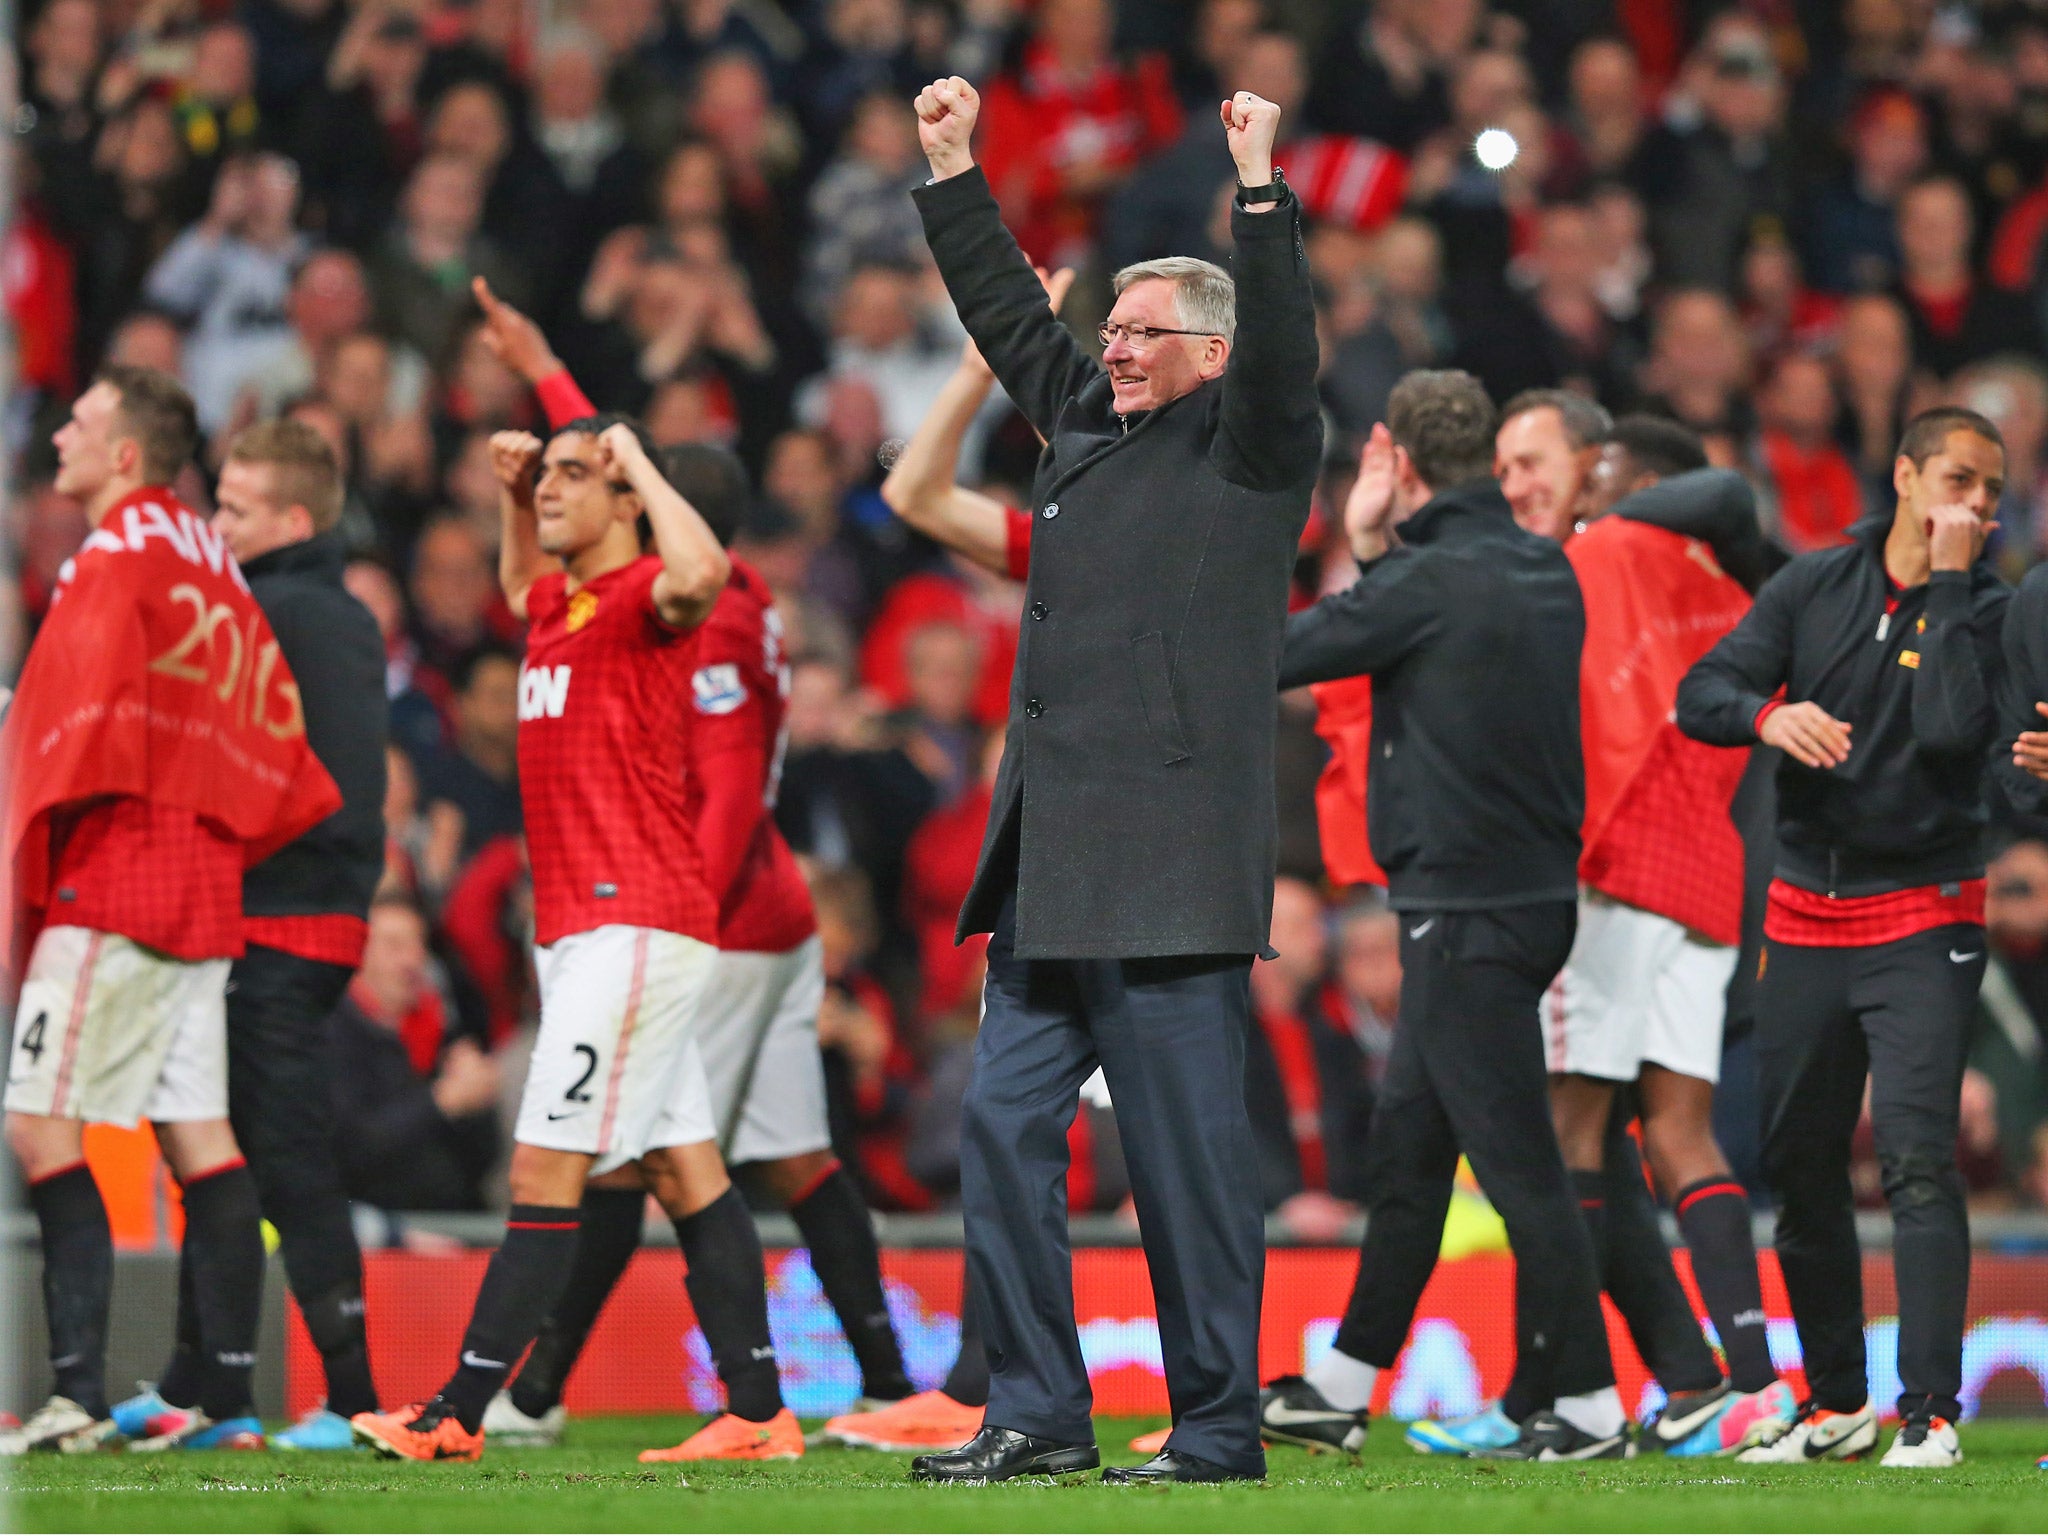 Ferguson celebrates his latest, and last, Premier League title triumph